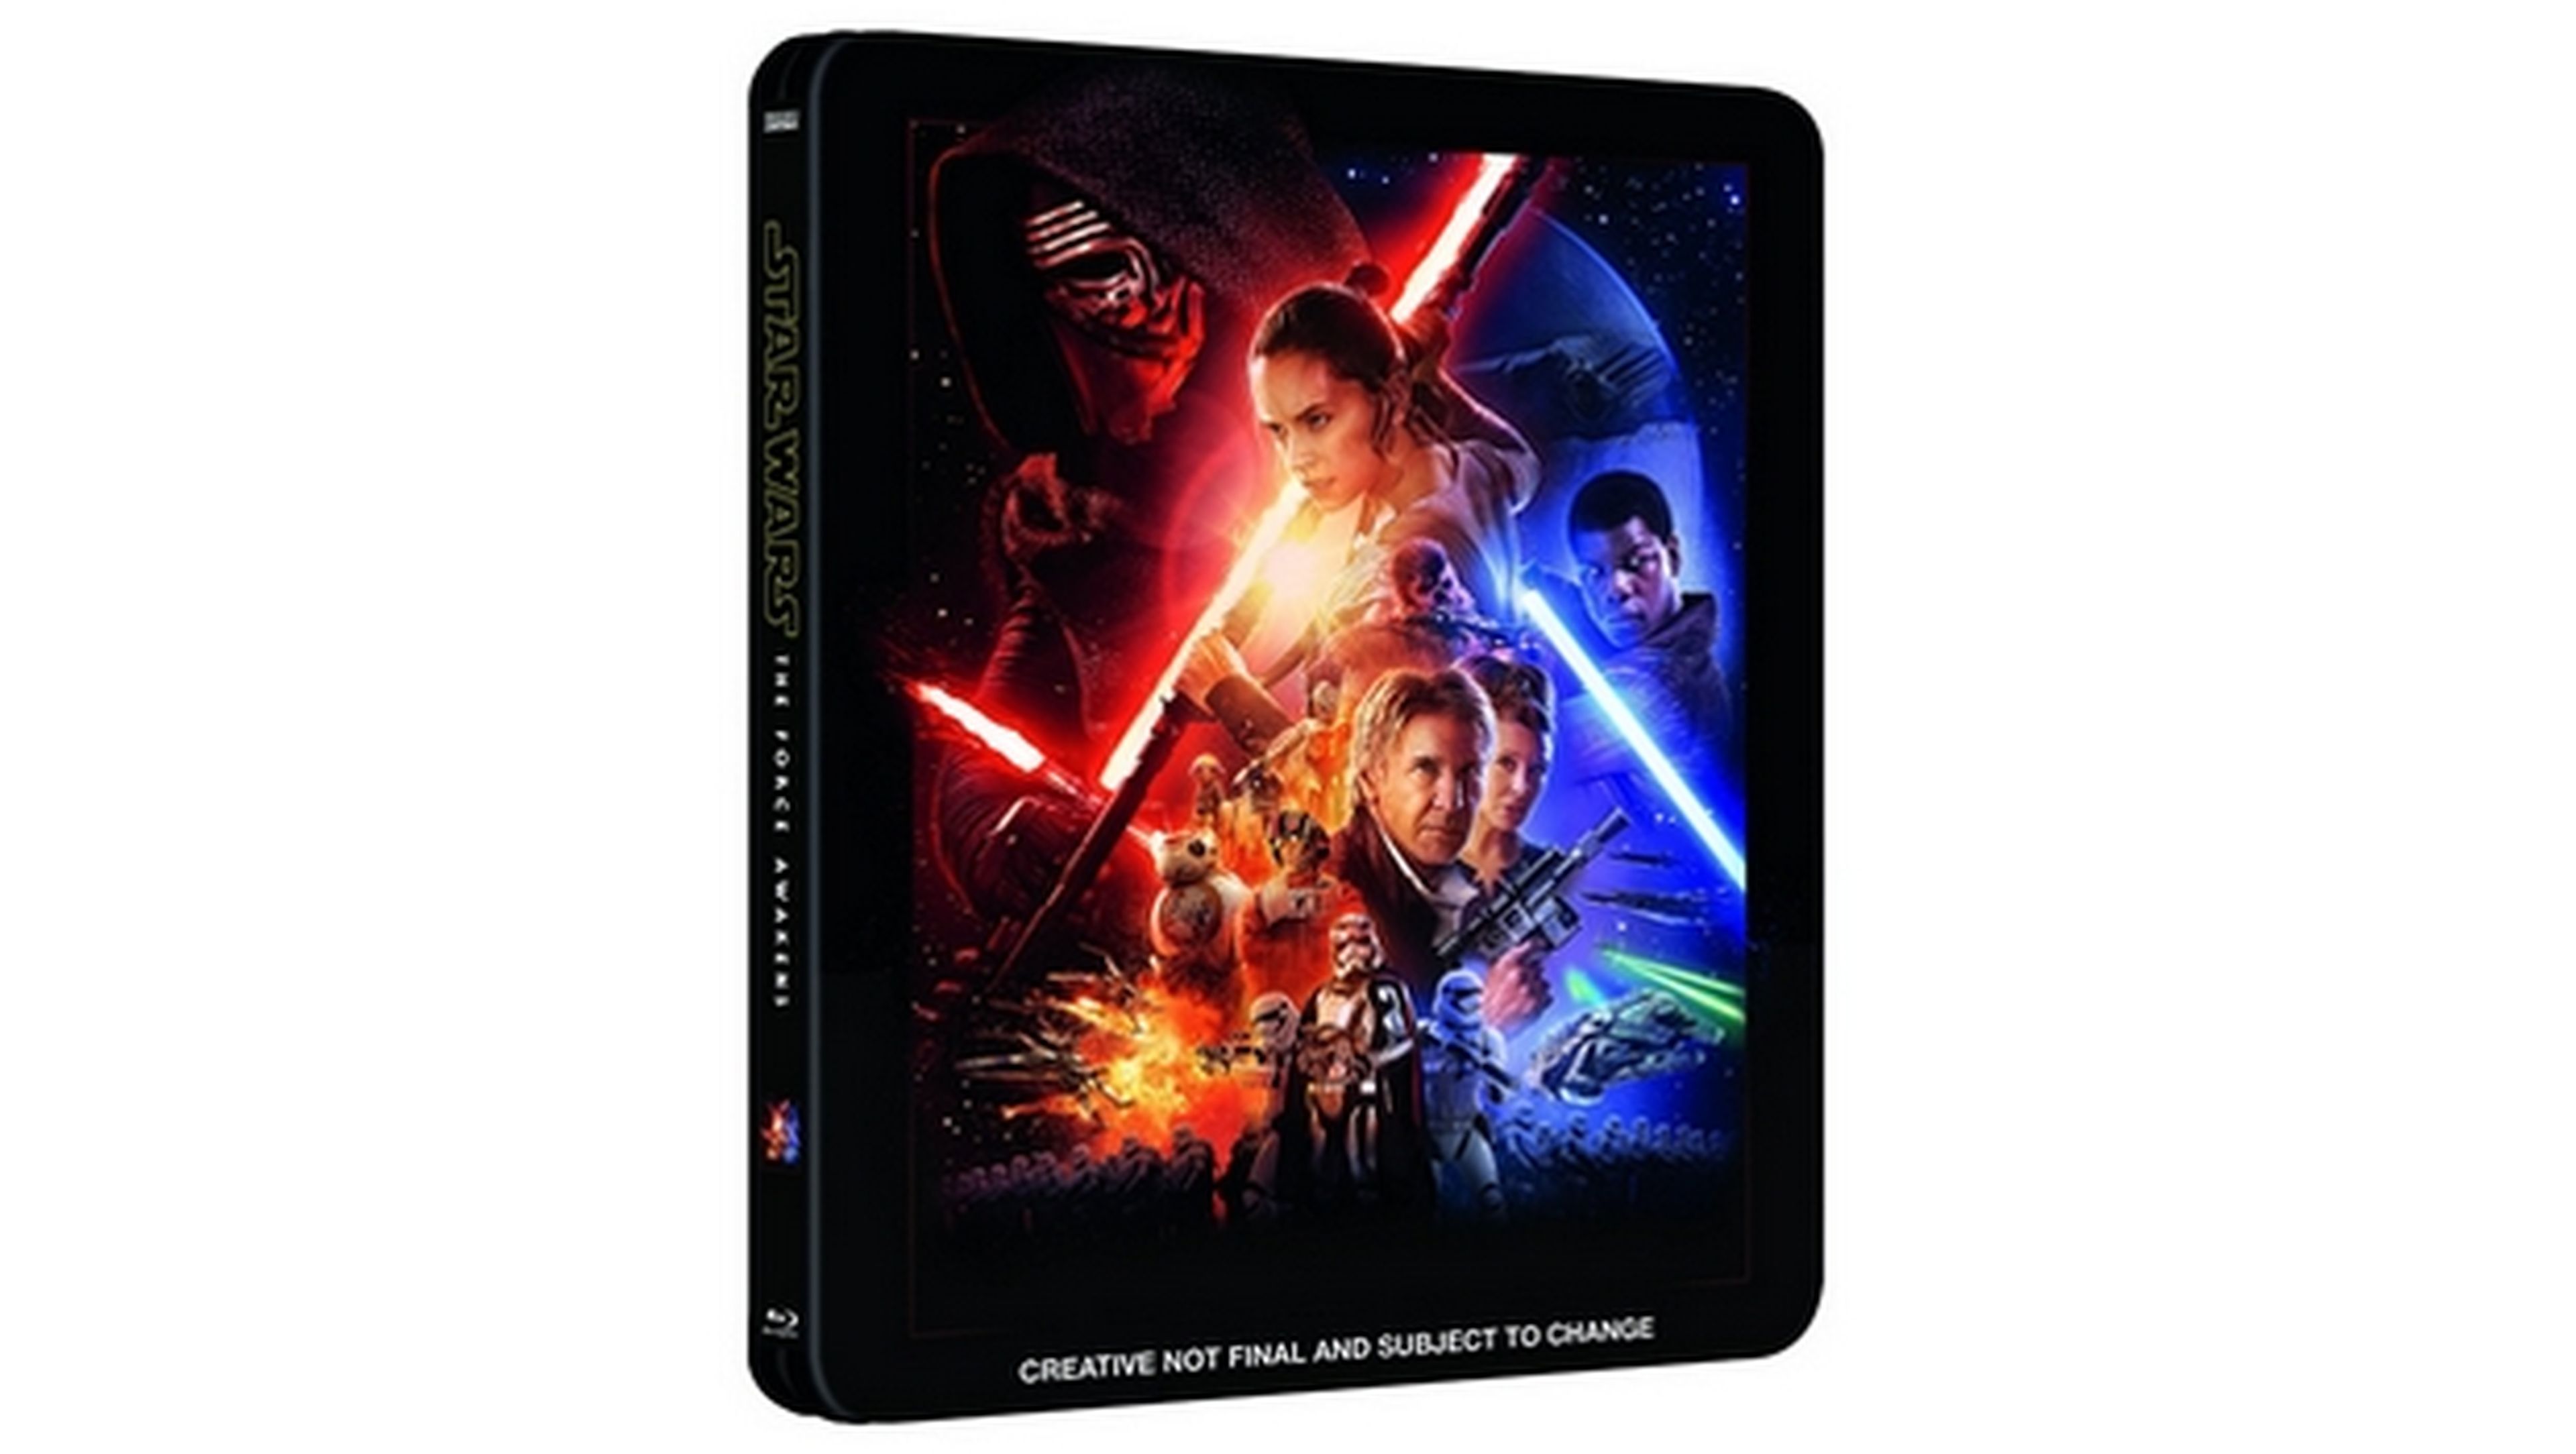 Star Wars El Despertar de la Fuerza no tendrá versión extendida en DVD